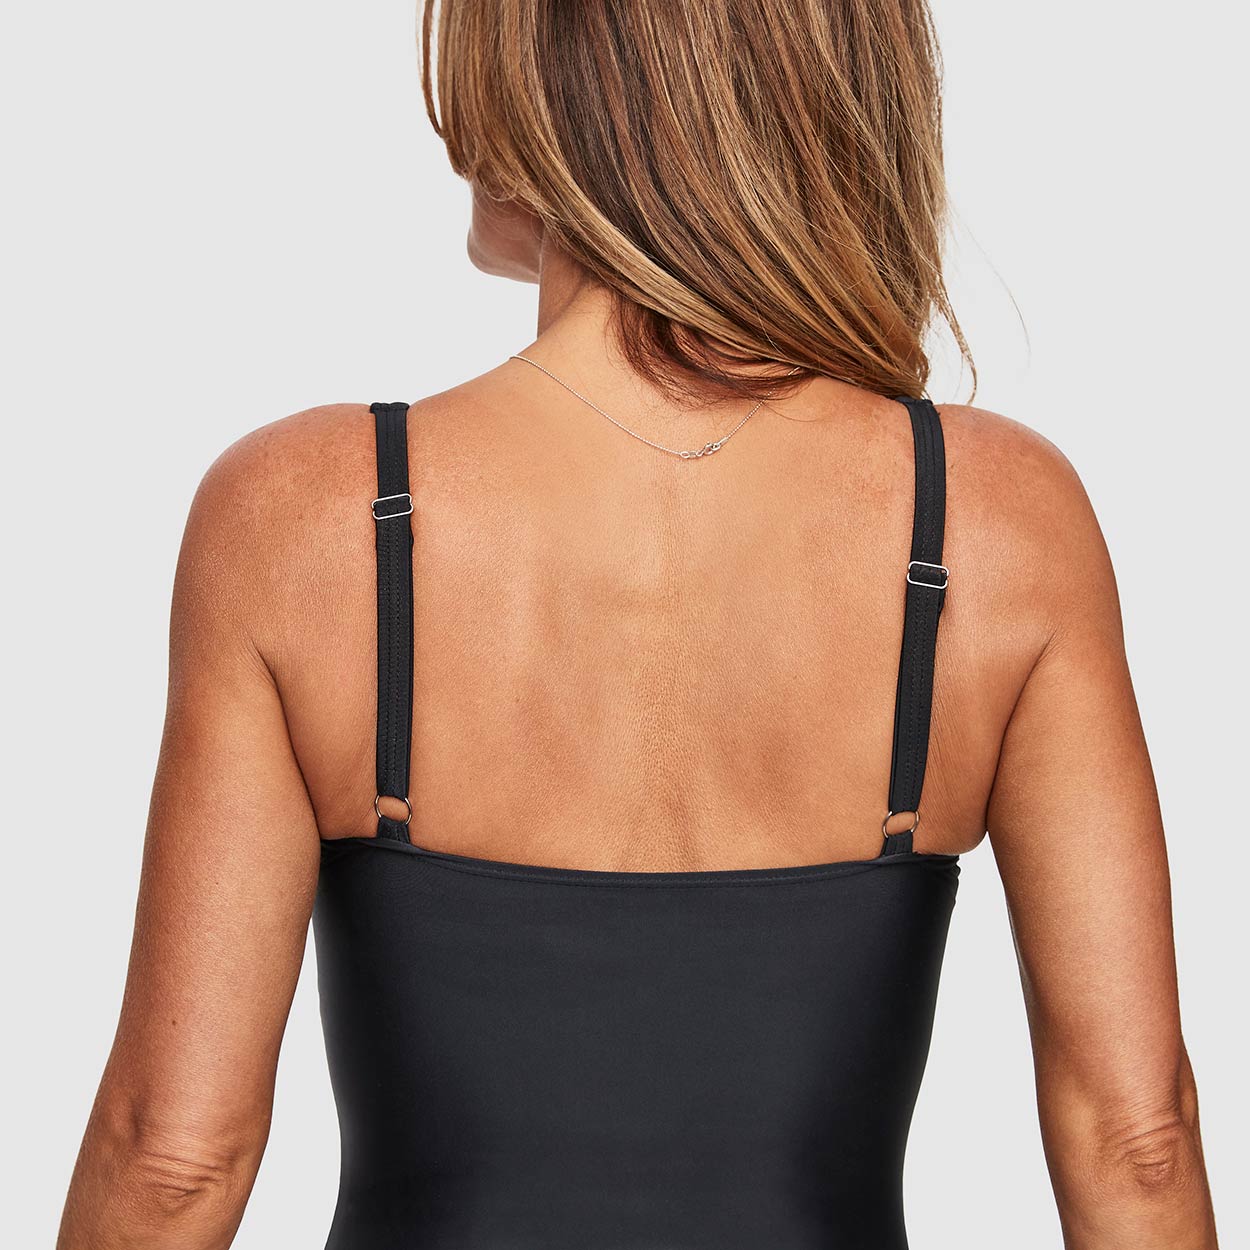 Abecitas Badeanzug Modell Capri in Farbe schwarz im Detail in der Rückansicht